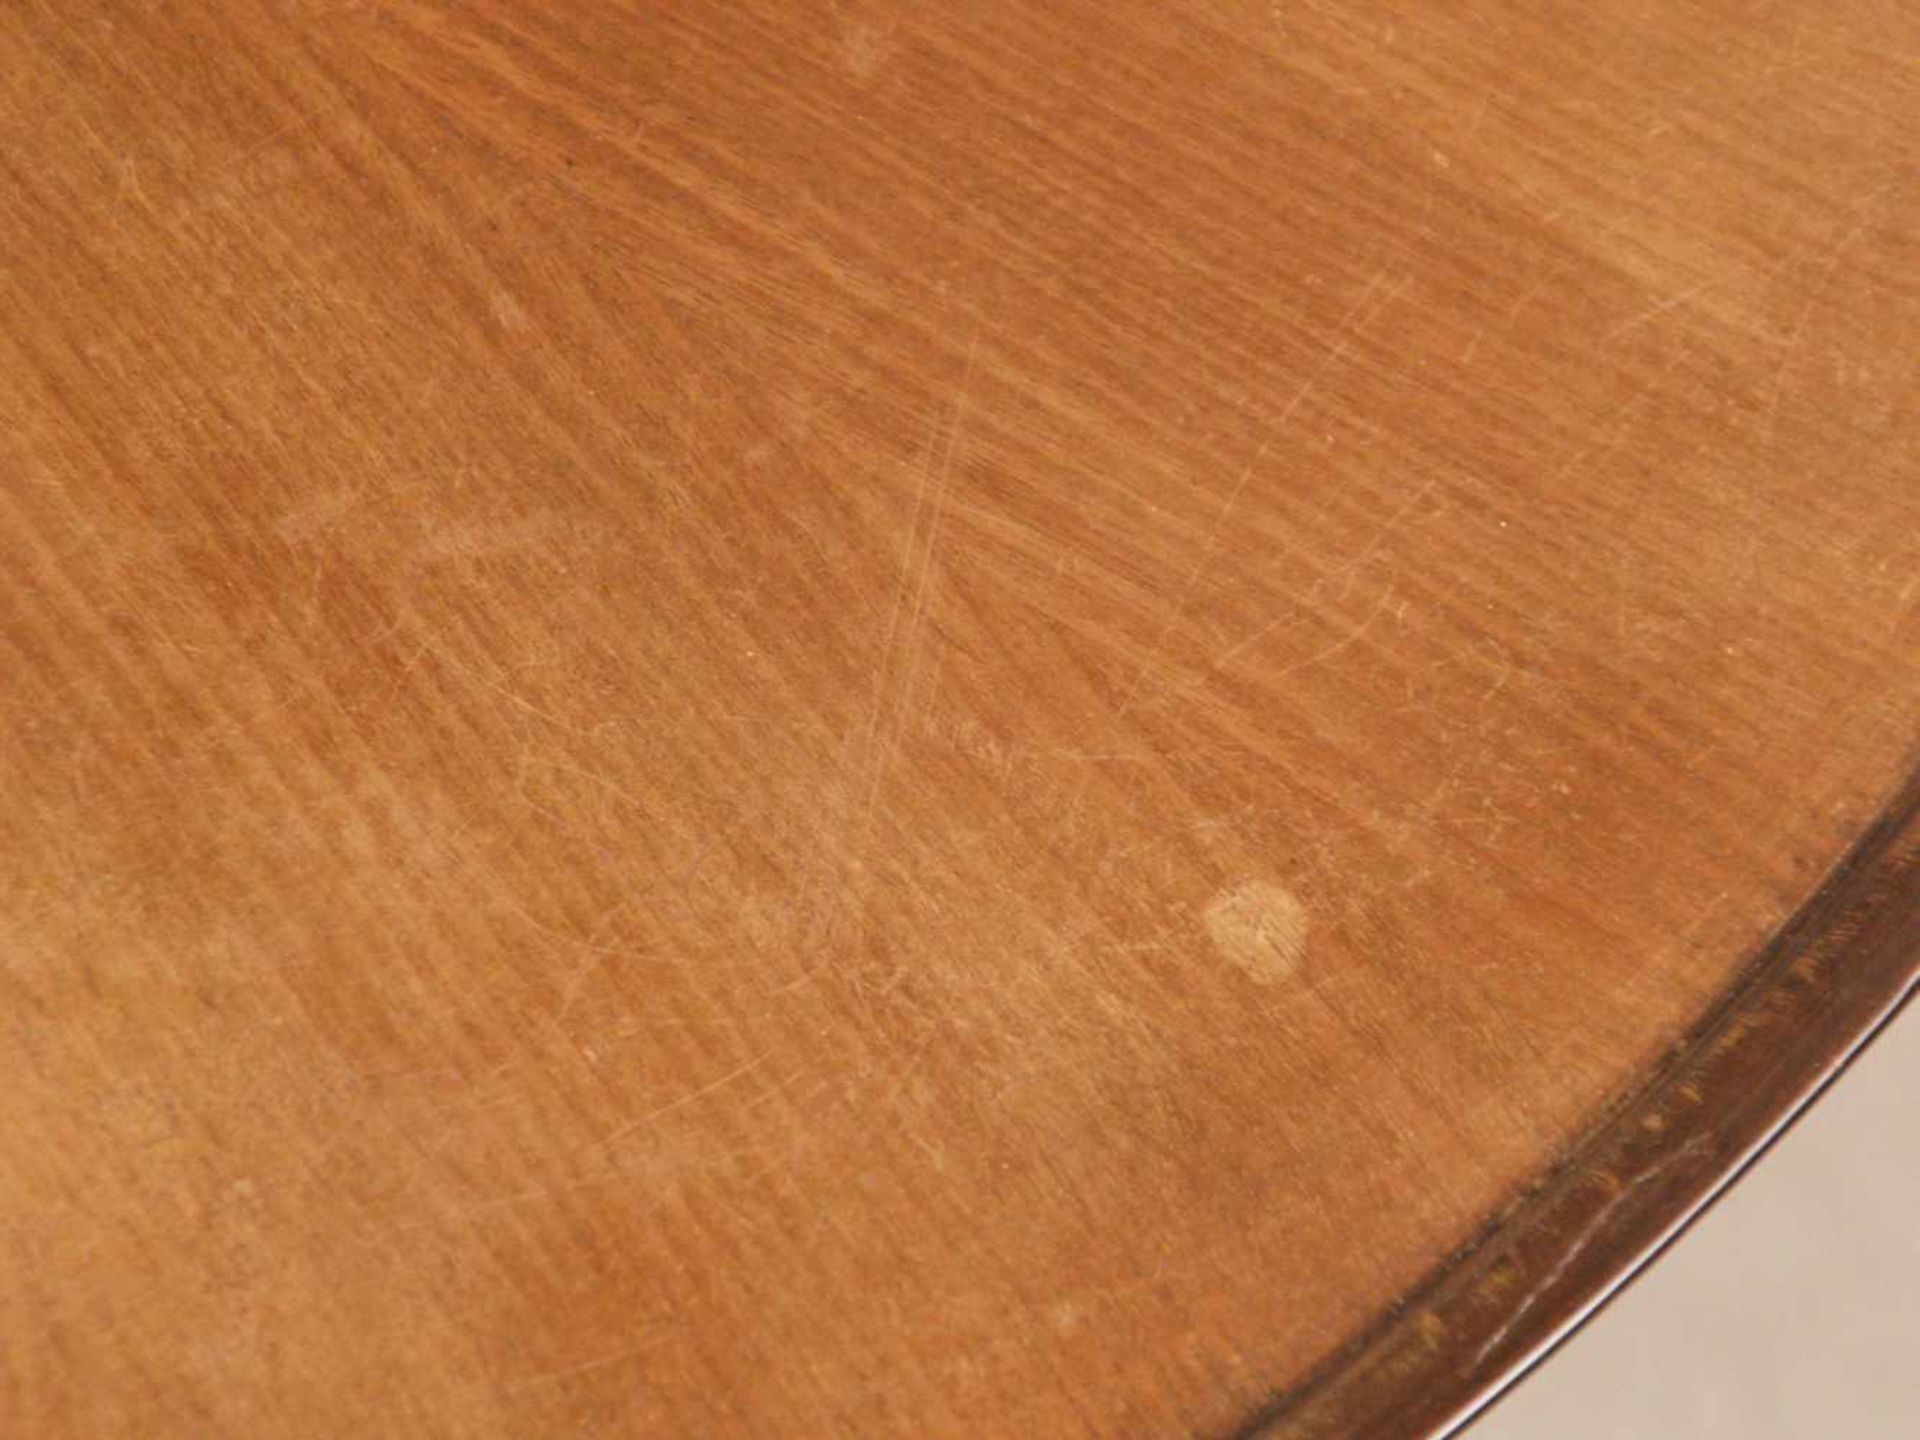 Couchtisch - runde marketierte Platte auf dreibeinigem Stand, Holz teils gebeizt, Höhe.ca.52cm, - Image 4 of 6